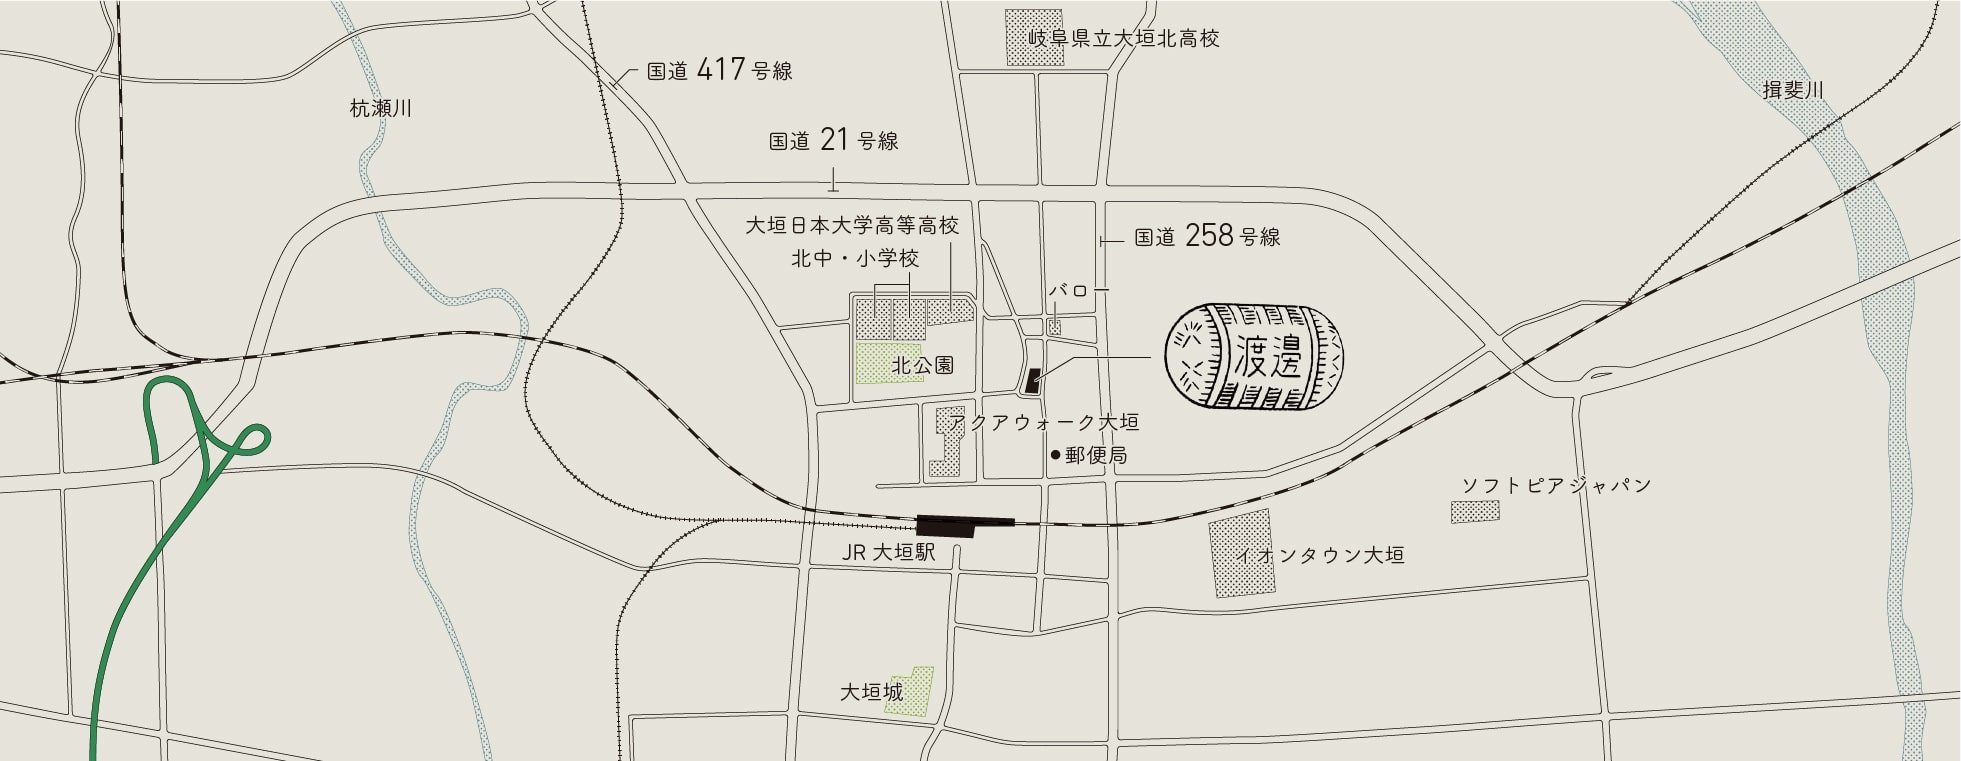 「JR大垣駅」で下車します。北口を出たら右に曲がり、212号線を北に300mほど進みます。「長勝寺」をすぎた先の左手に「渡辺酒造釀」があります。